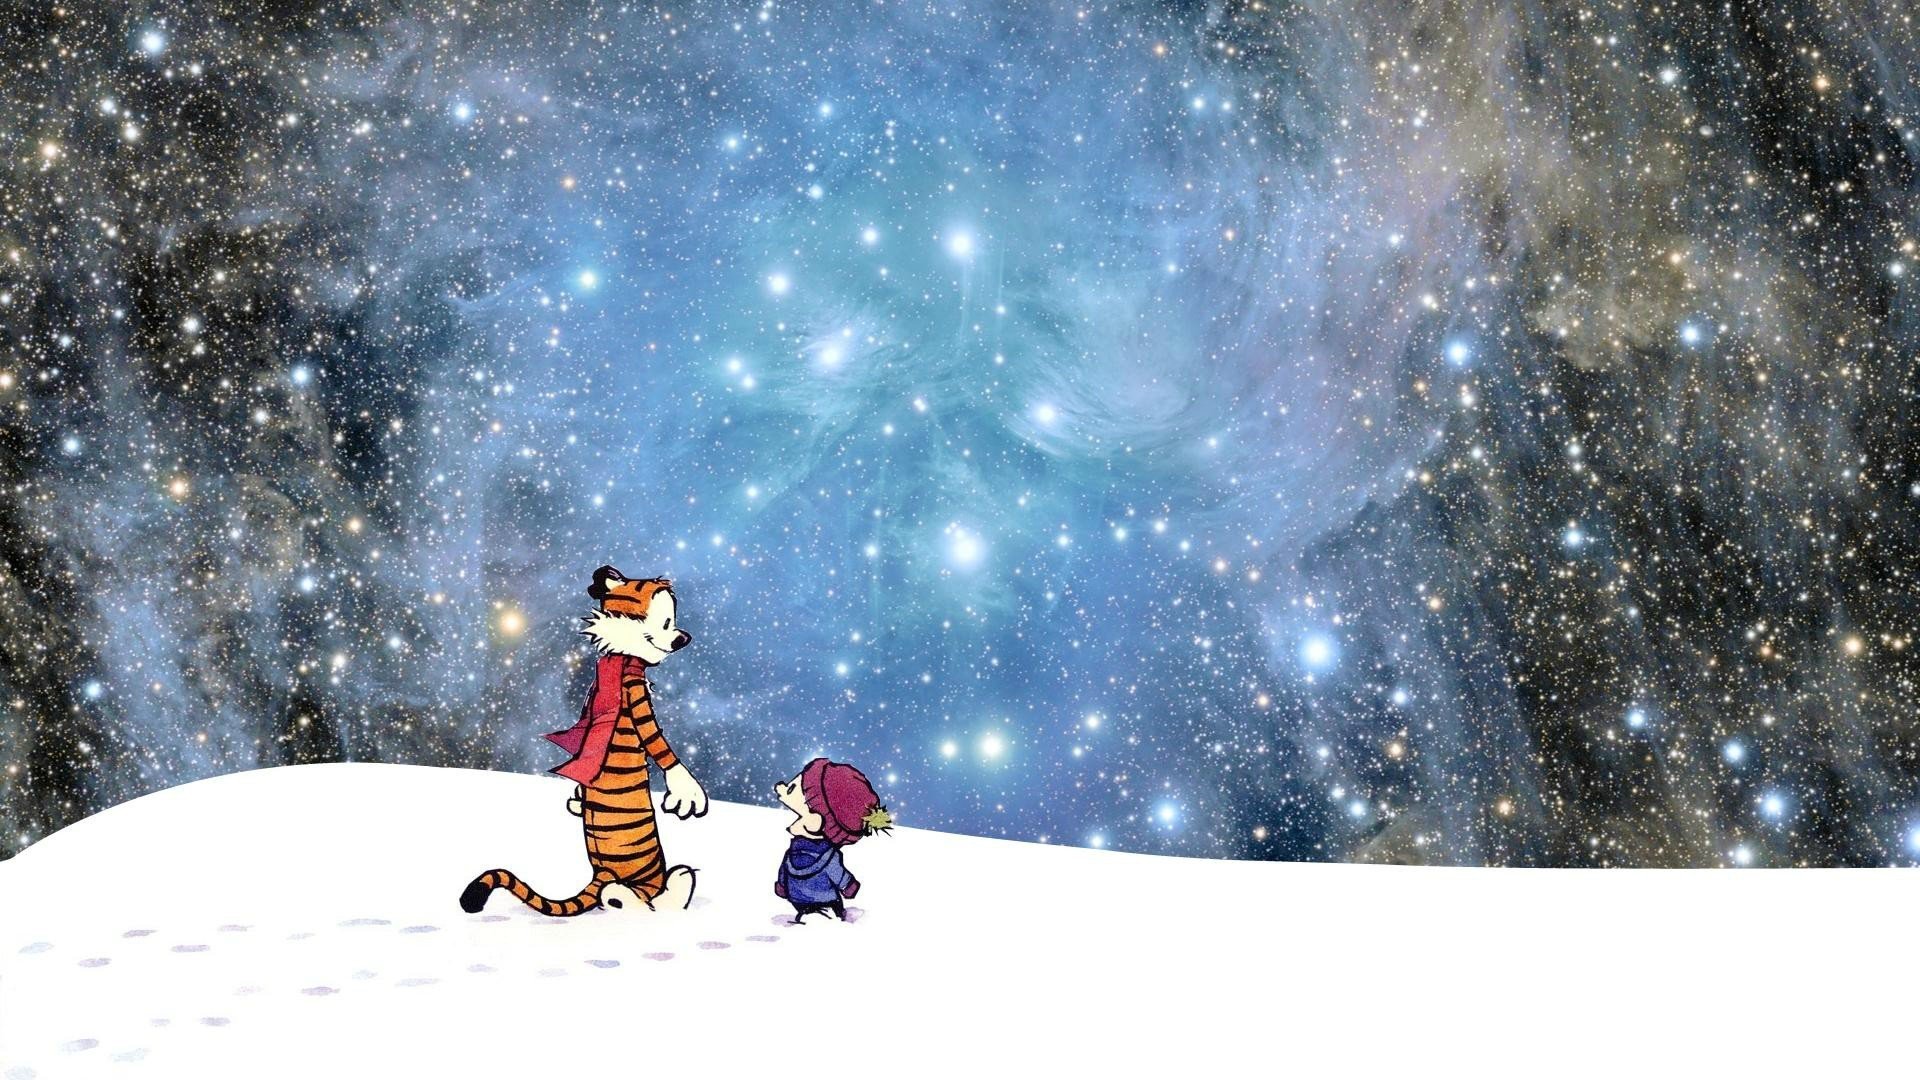 46+] Calvin and Hobbes Stars Wallpaper - WallpaperSafari